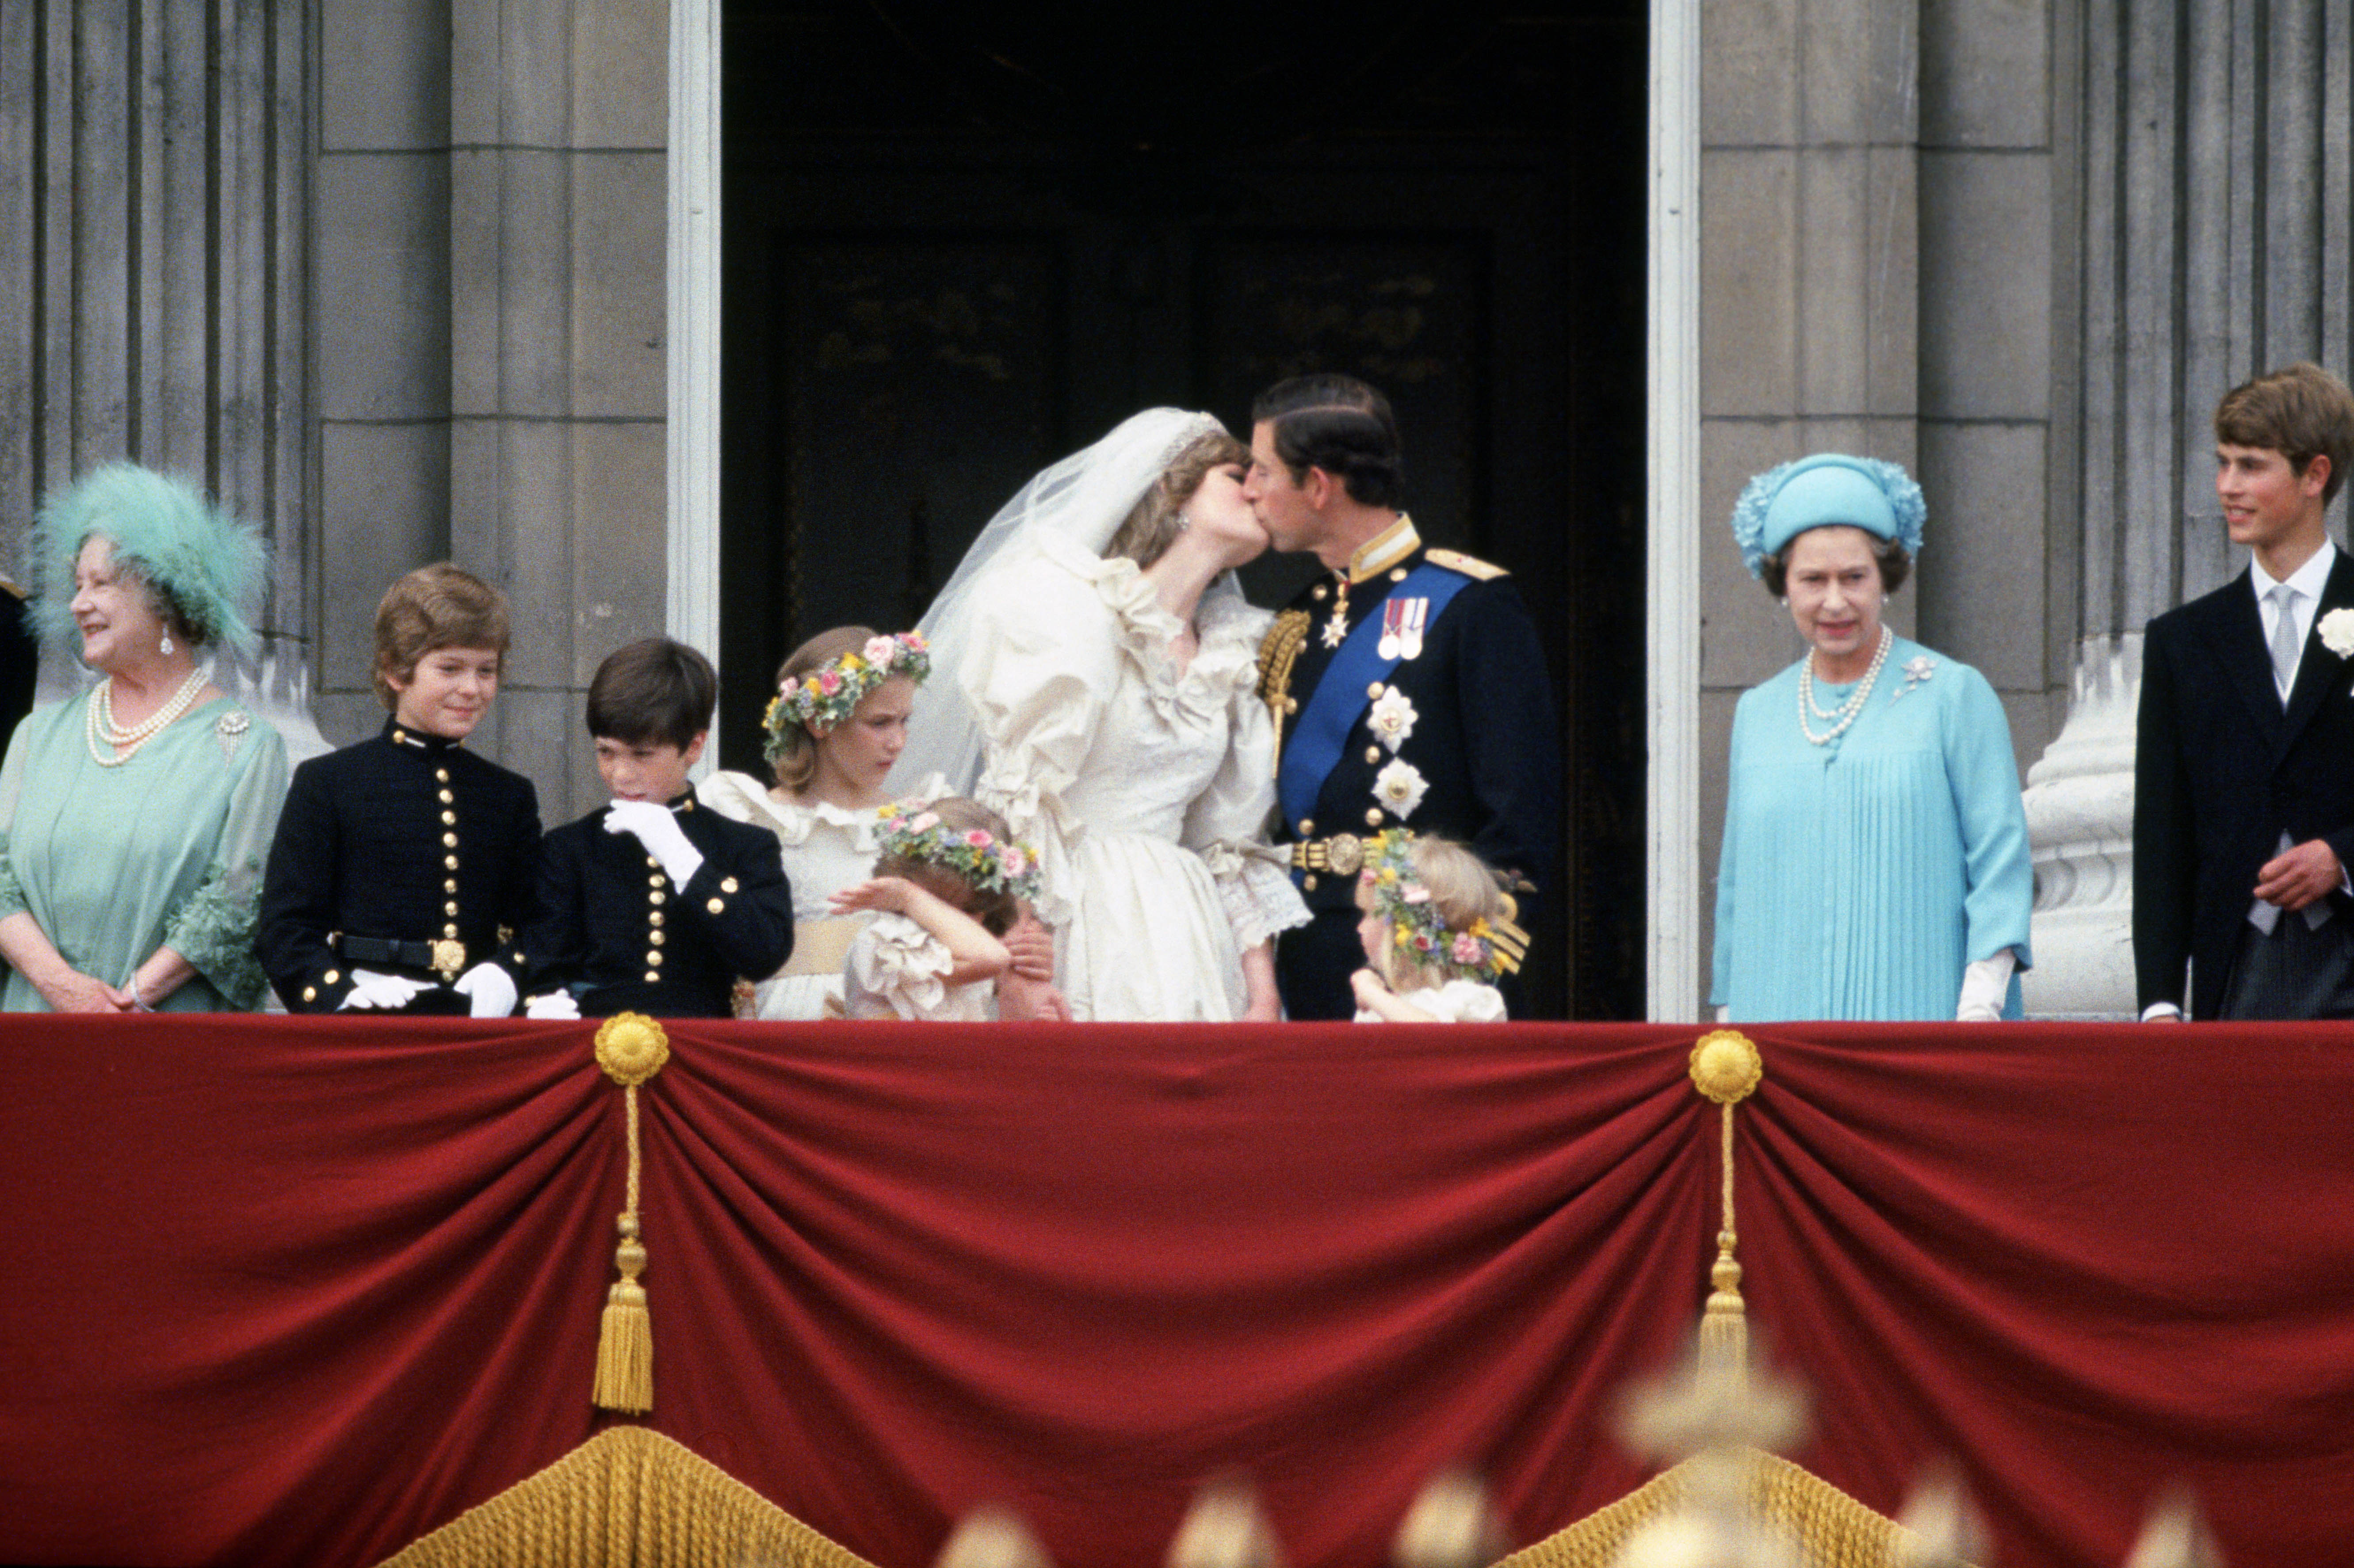 Princess Diana and Prince Charles' wedding